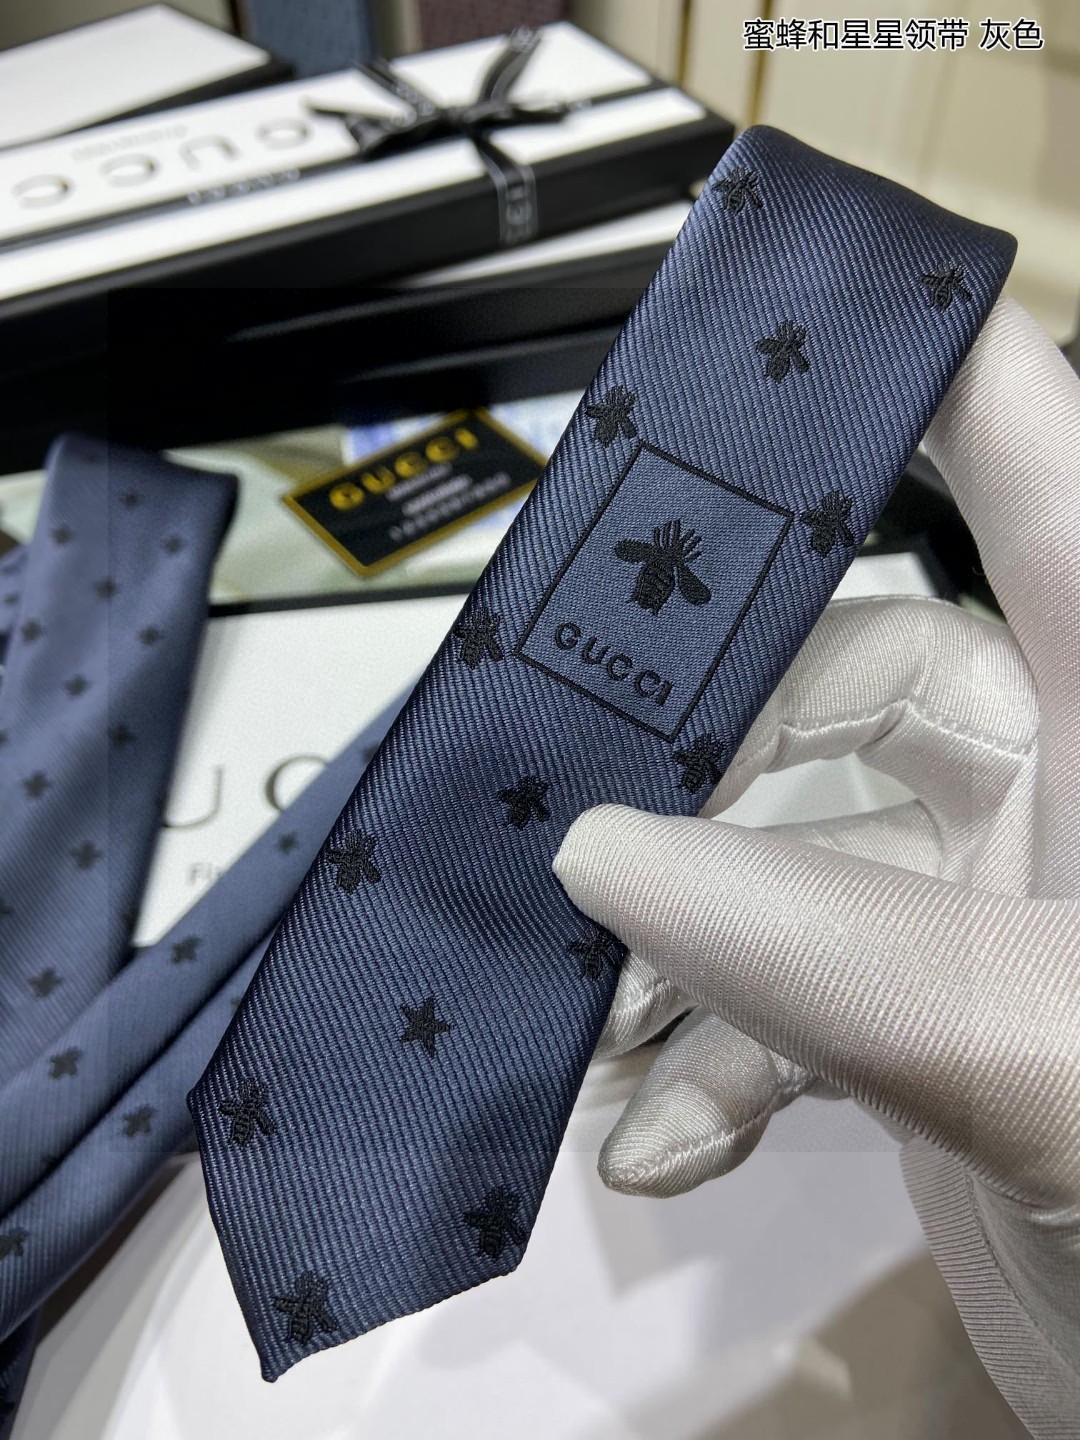 特价G家男士领带系列蜜蜂和星星领带稀有展现精湛手工与时尚优雅的理想选择这款领带将标志性的主题动物小蜜蜂与